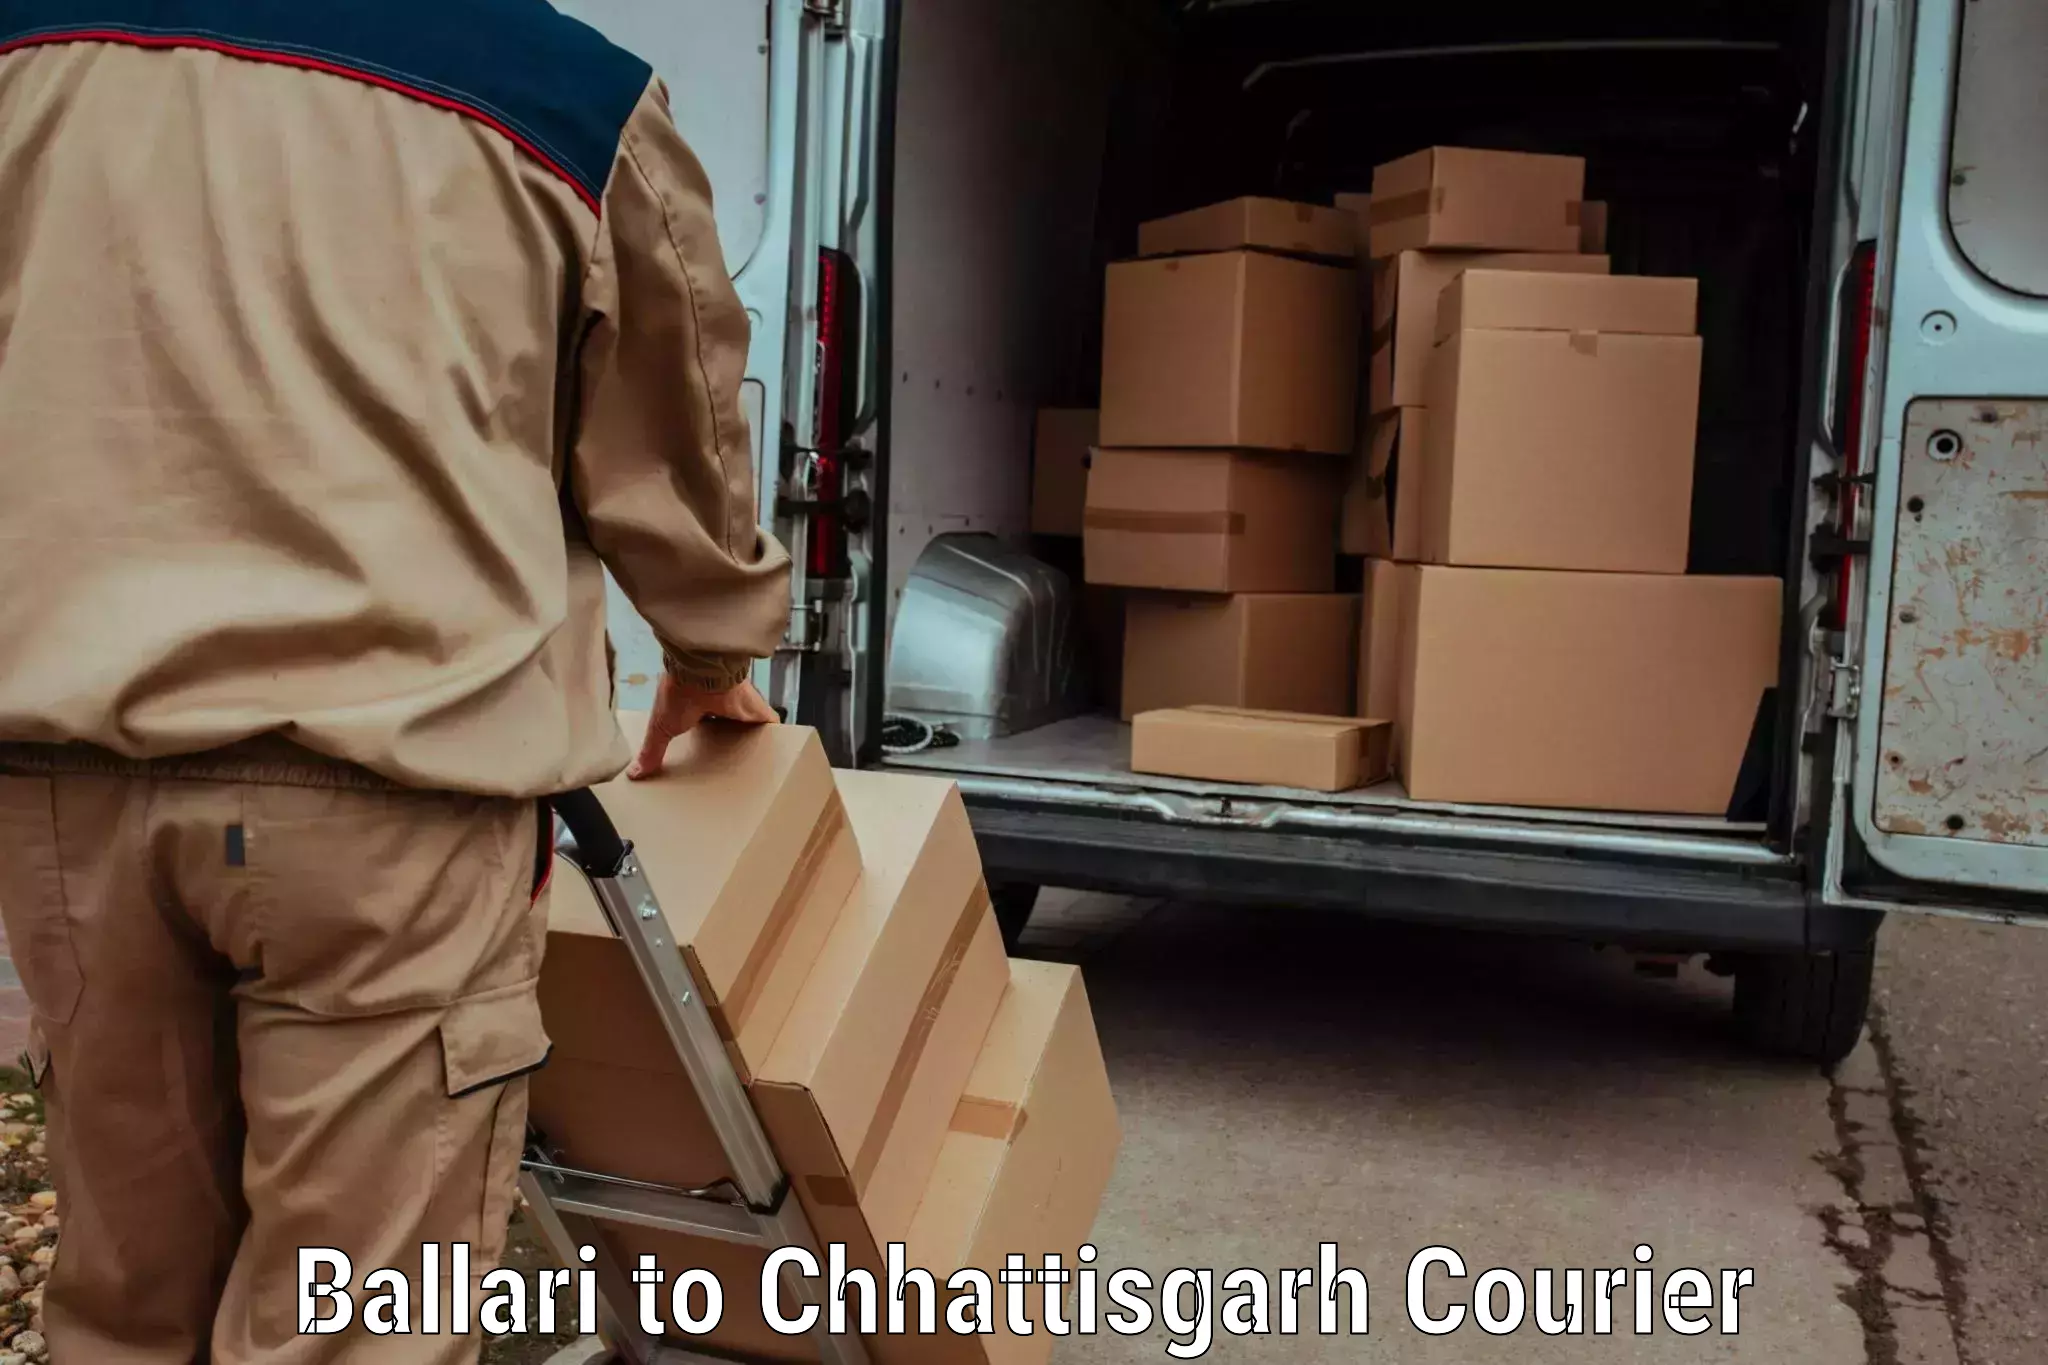 Personalized courier solutions Ballari to Bijapur Chhattisgarh